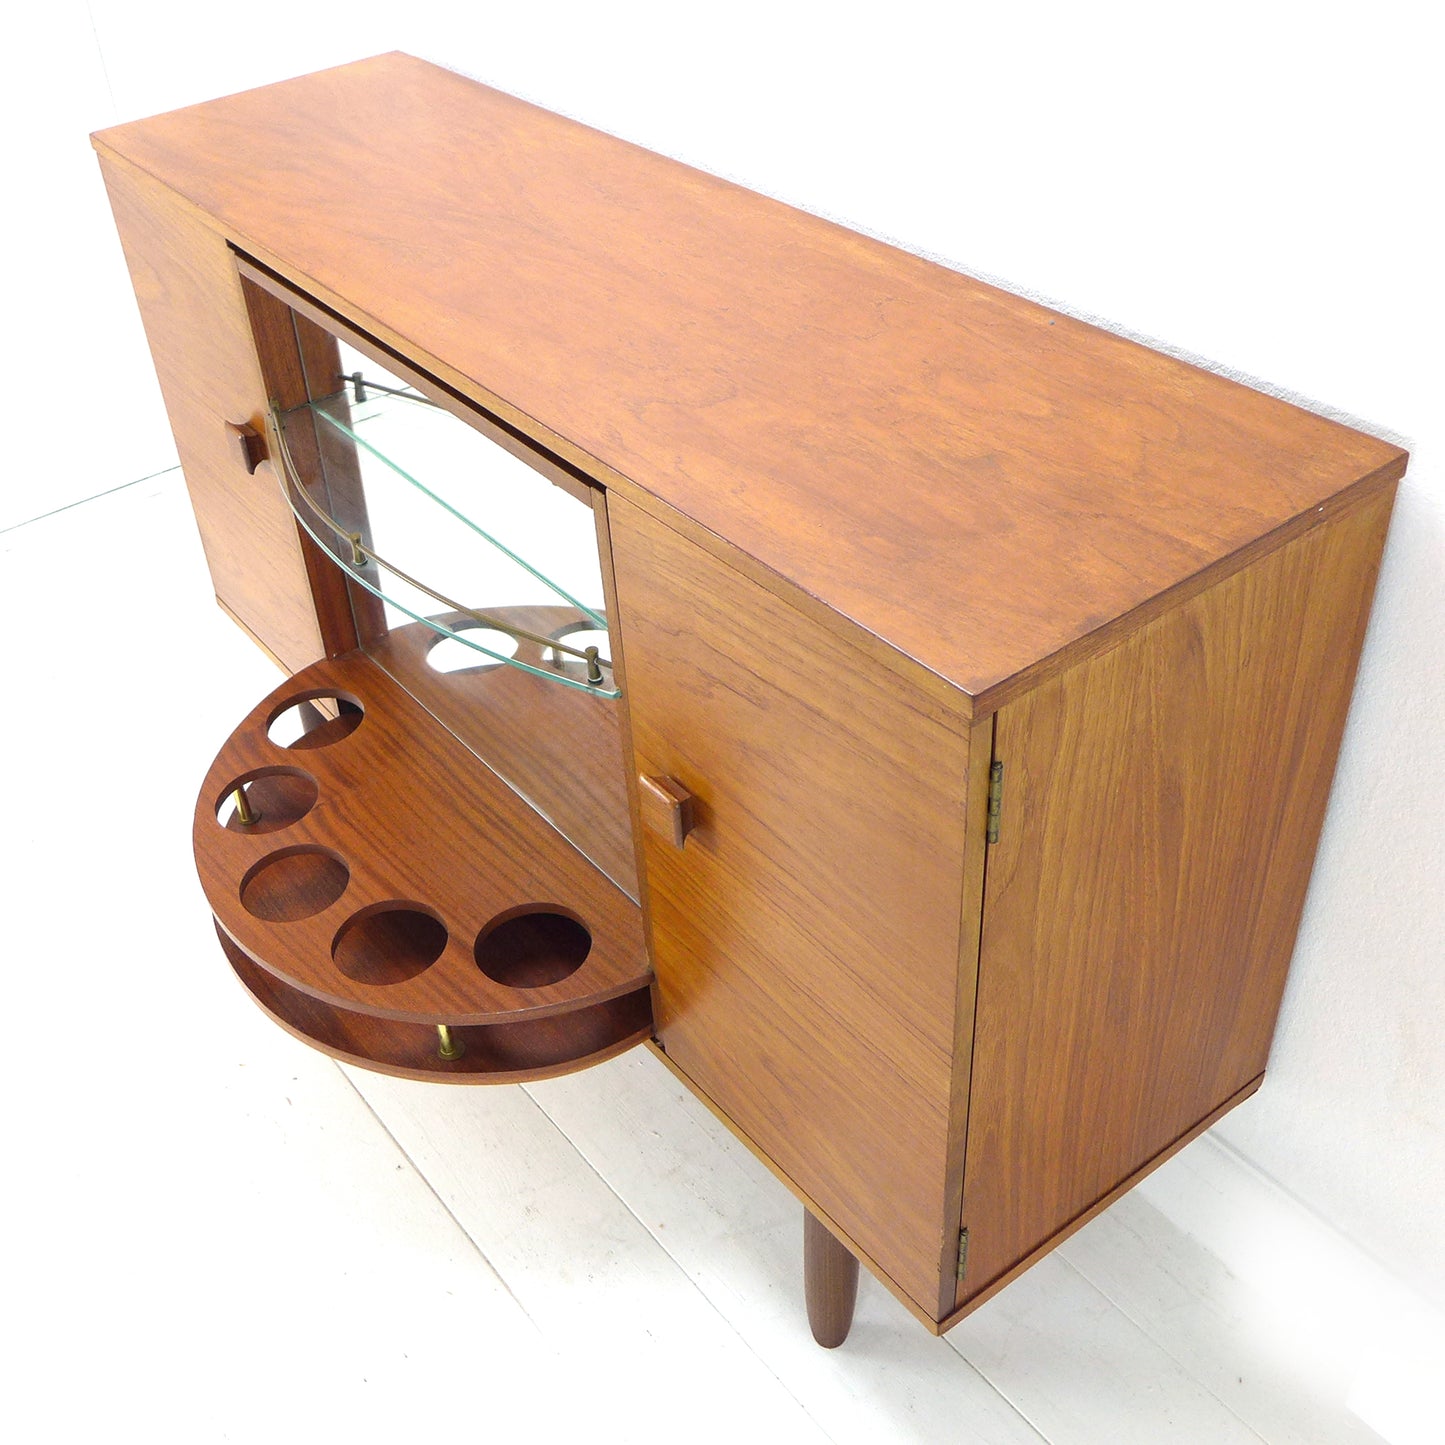 Metamorphic Sideboard/Drinks Cabinet in Teak by George Serlin & Sons / Sureline - Mid Century